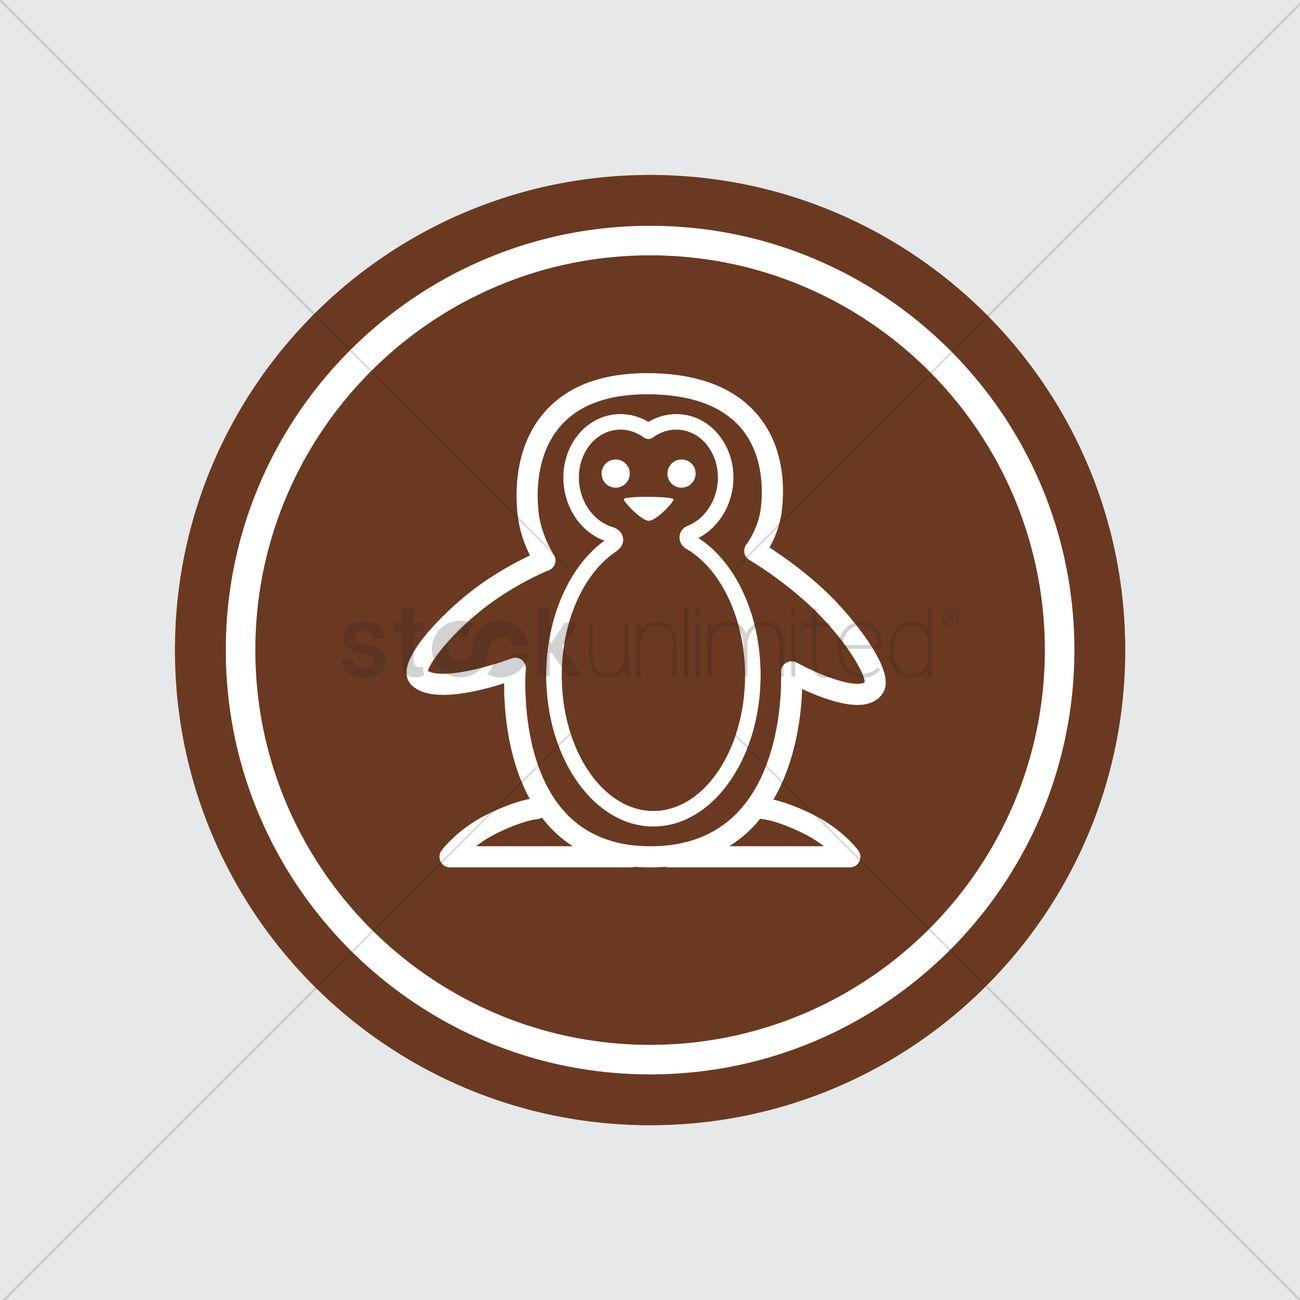 Penguin in Orange Oval Logo - Penguin Vector Image